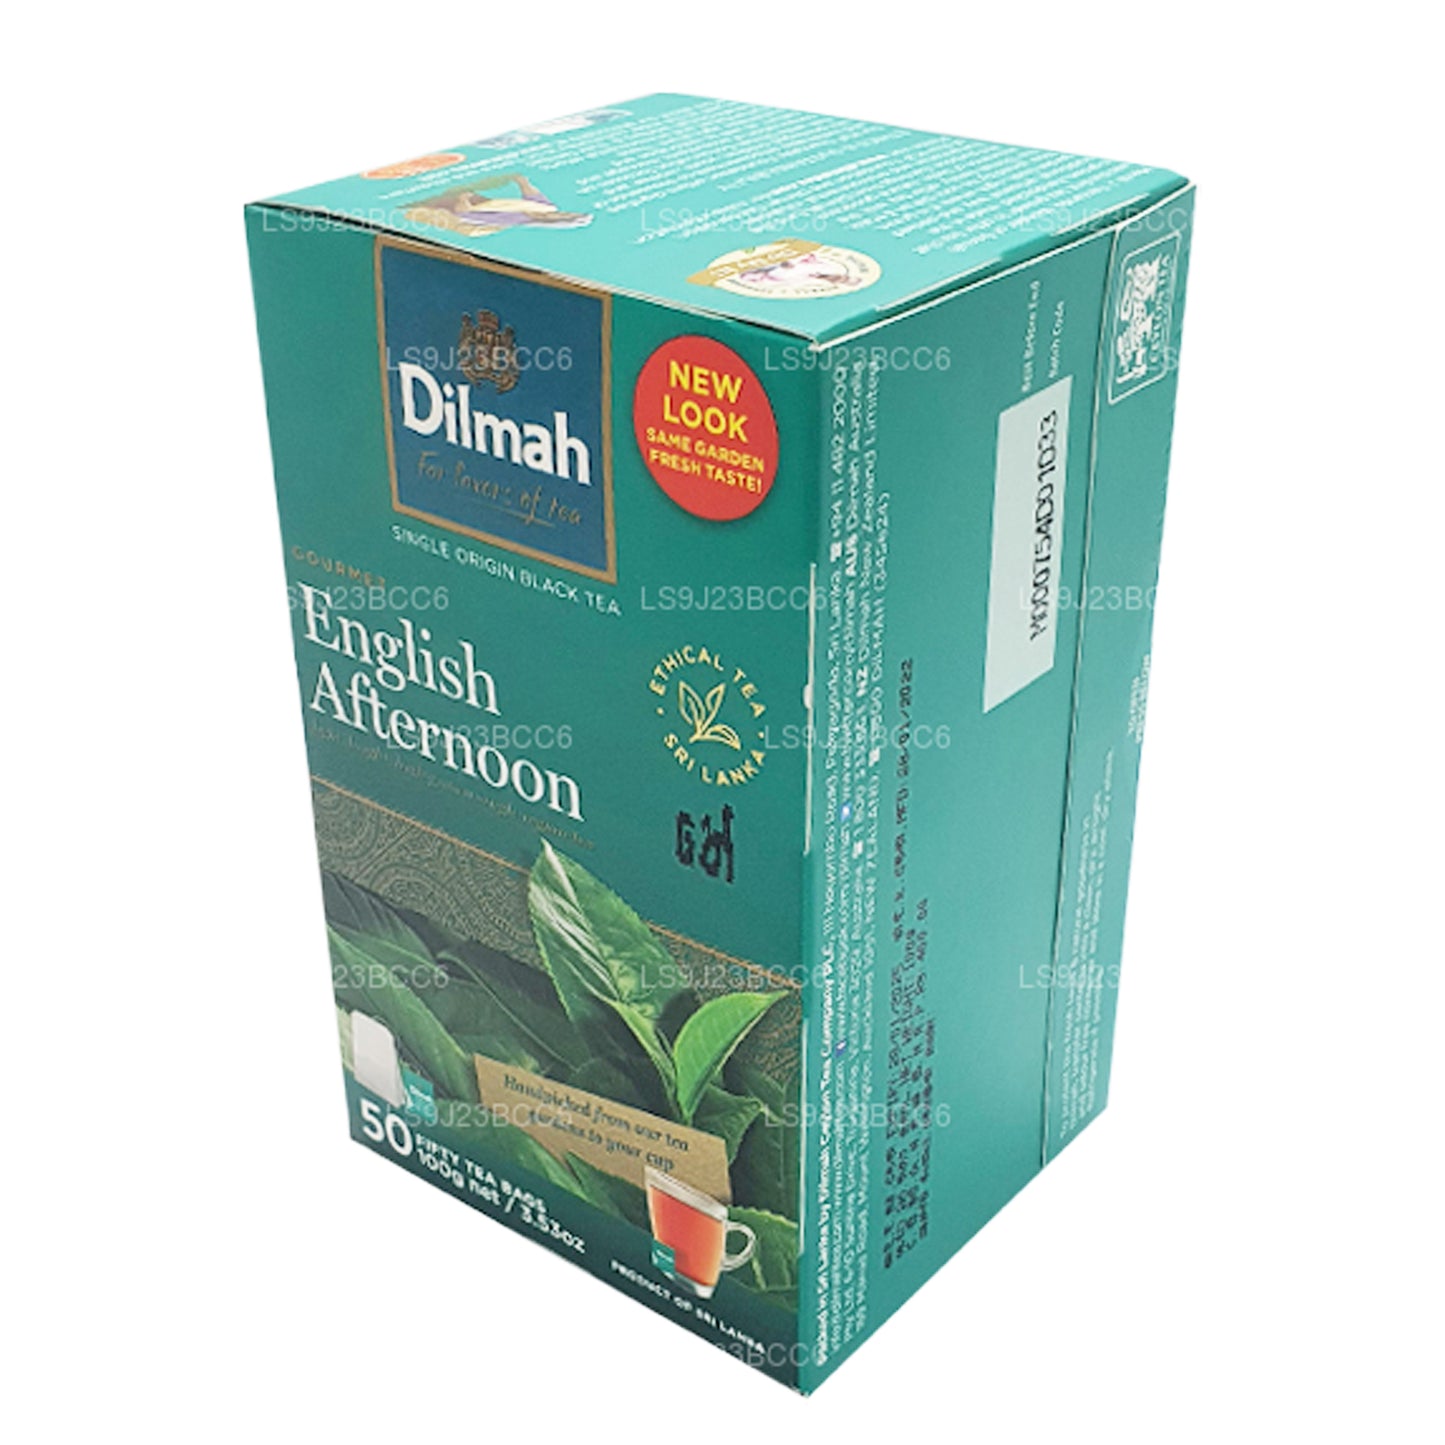 Английский послеобеденный чай Dilmah, 50 пакетиков (100 г)